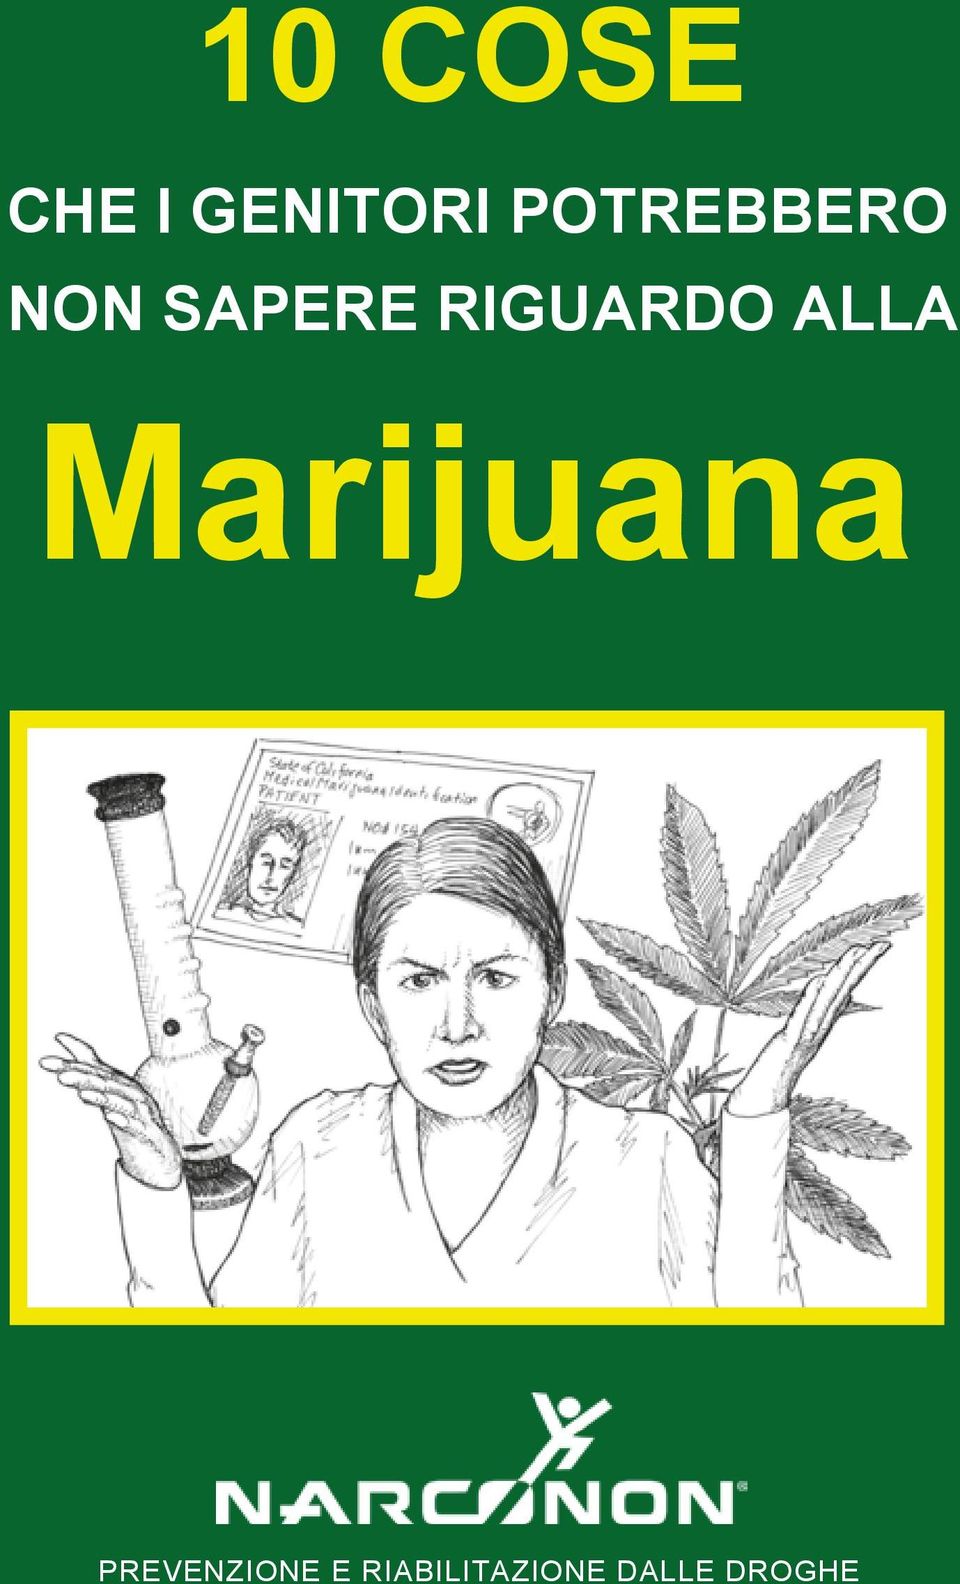 RIGUARDO ALLA Marijuana